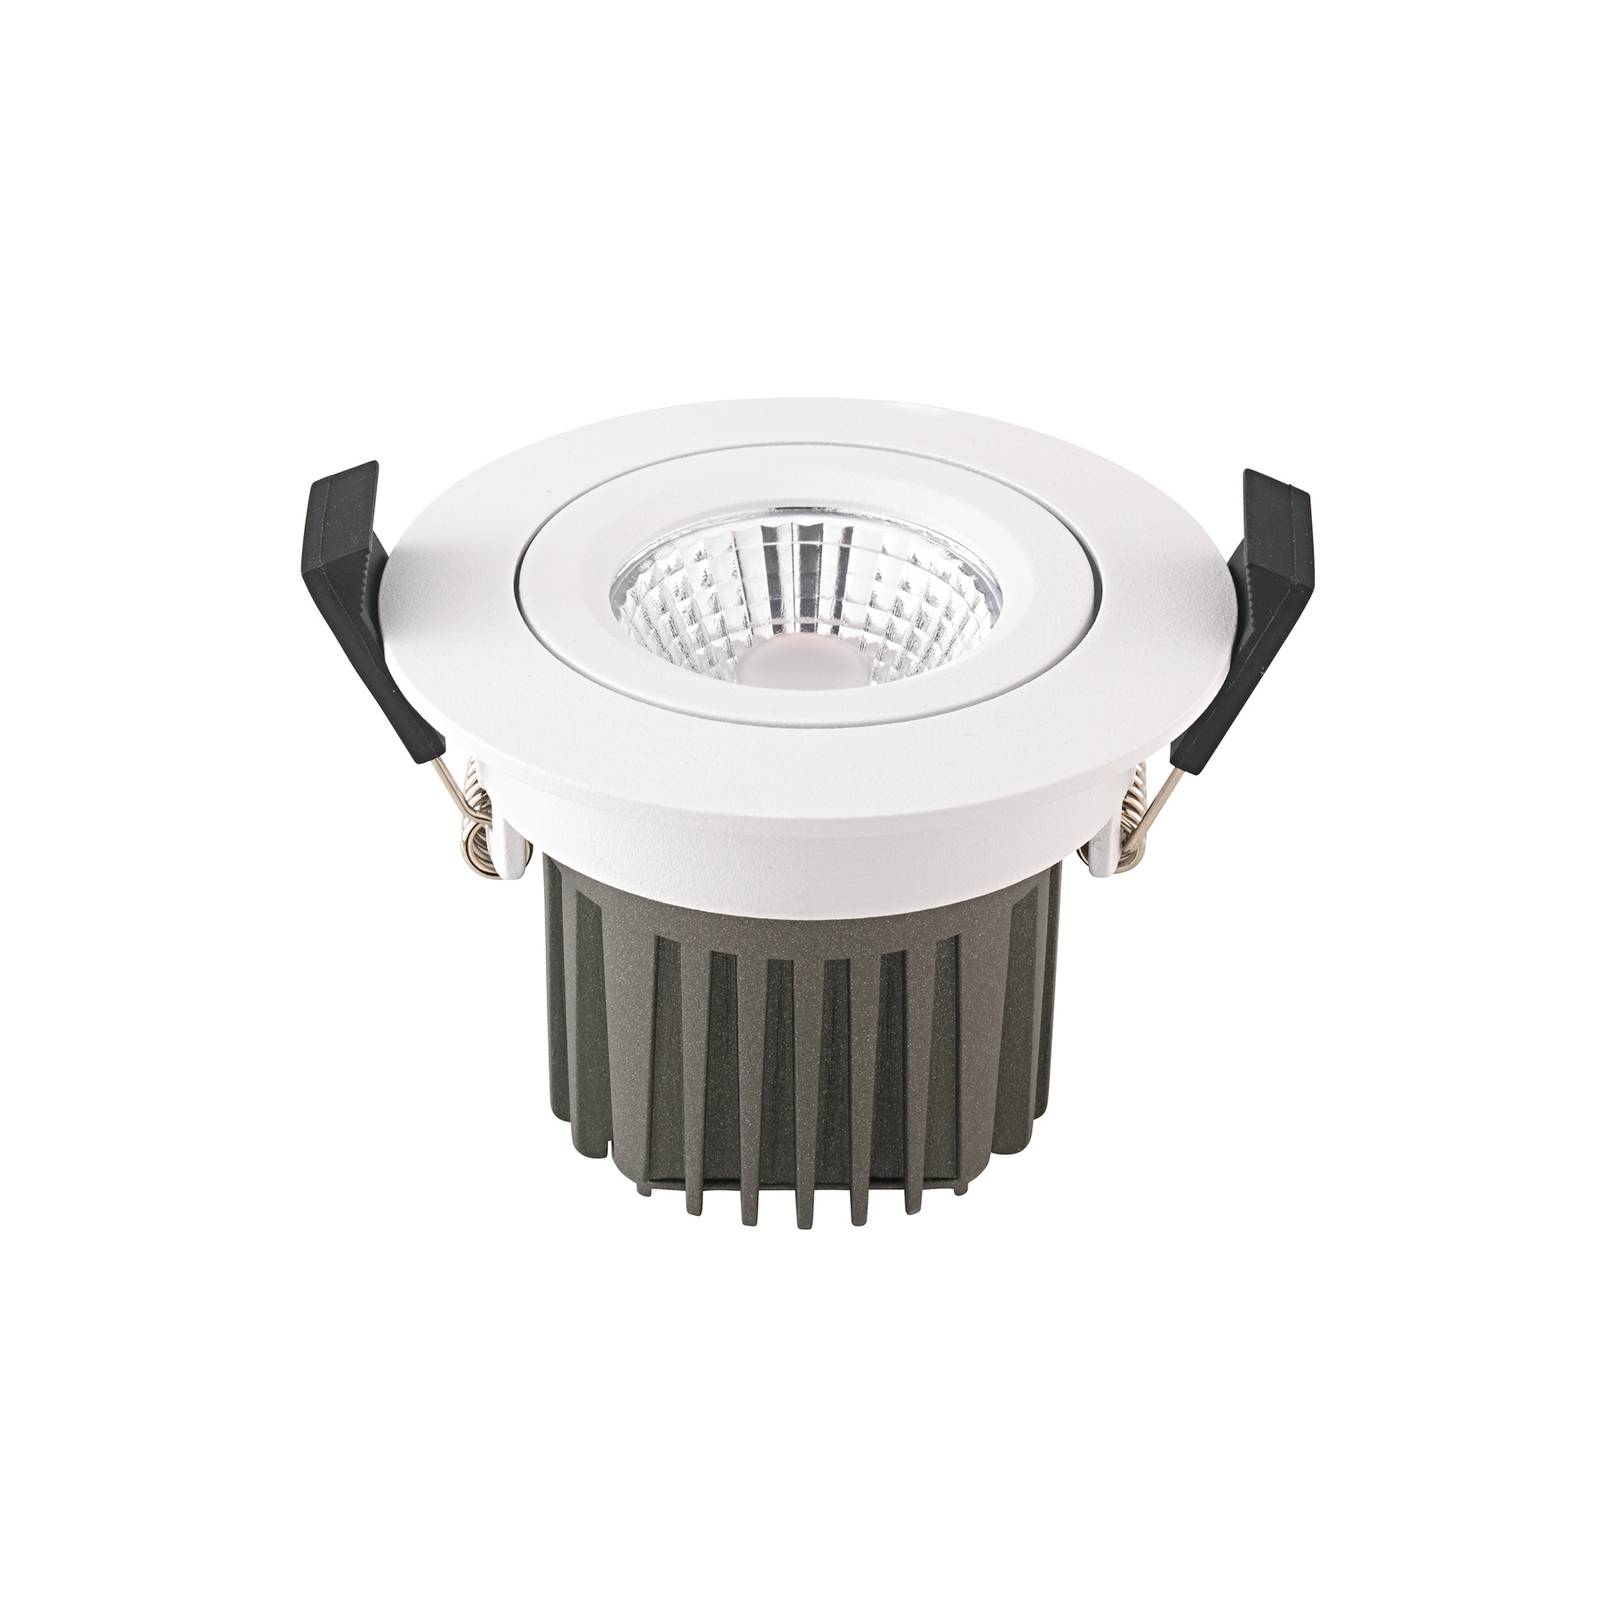 Sigor LED-Deckeneinbauspot Diled, Ø 8,5cm, 10 W, Dim-To-Warm, weiß